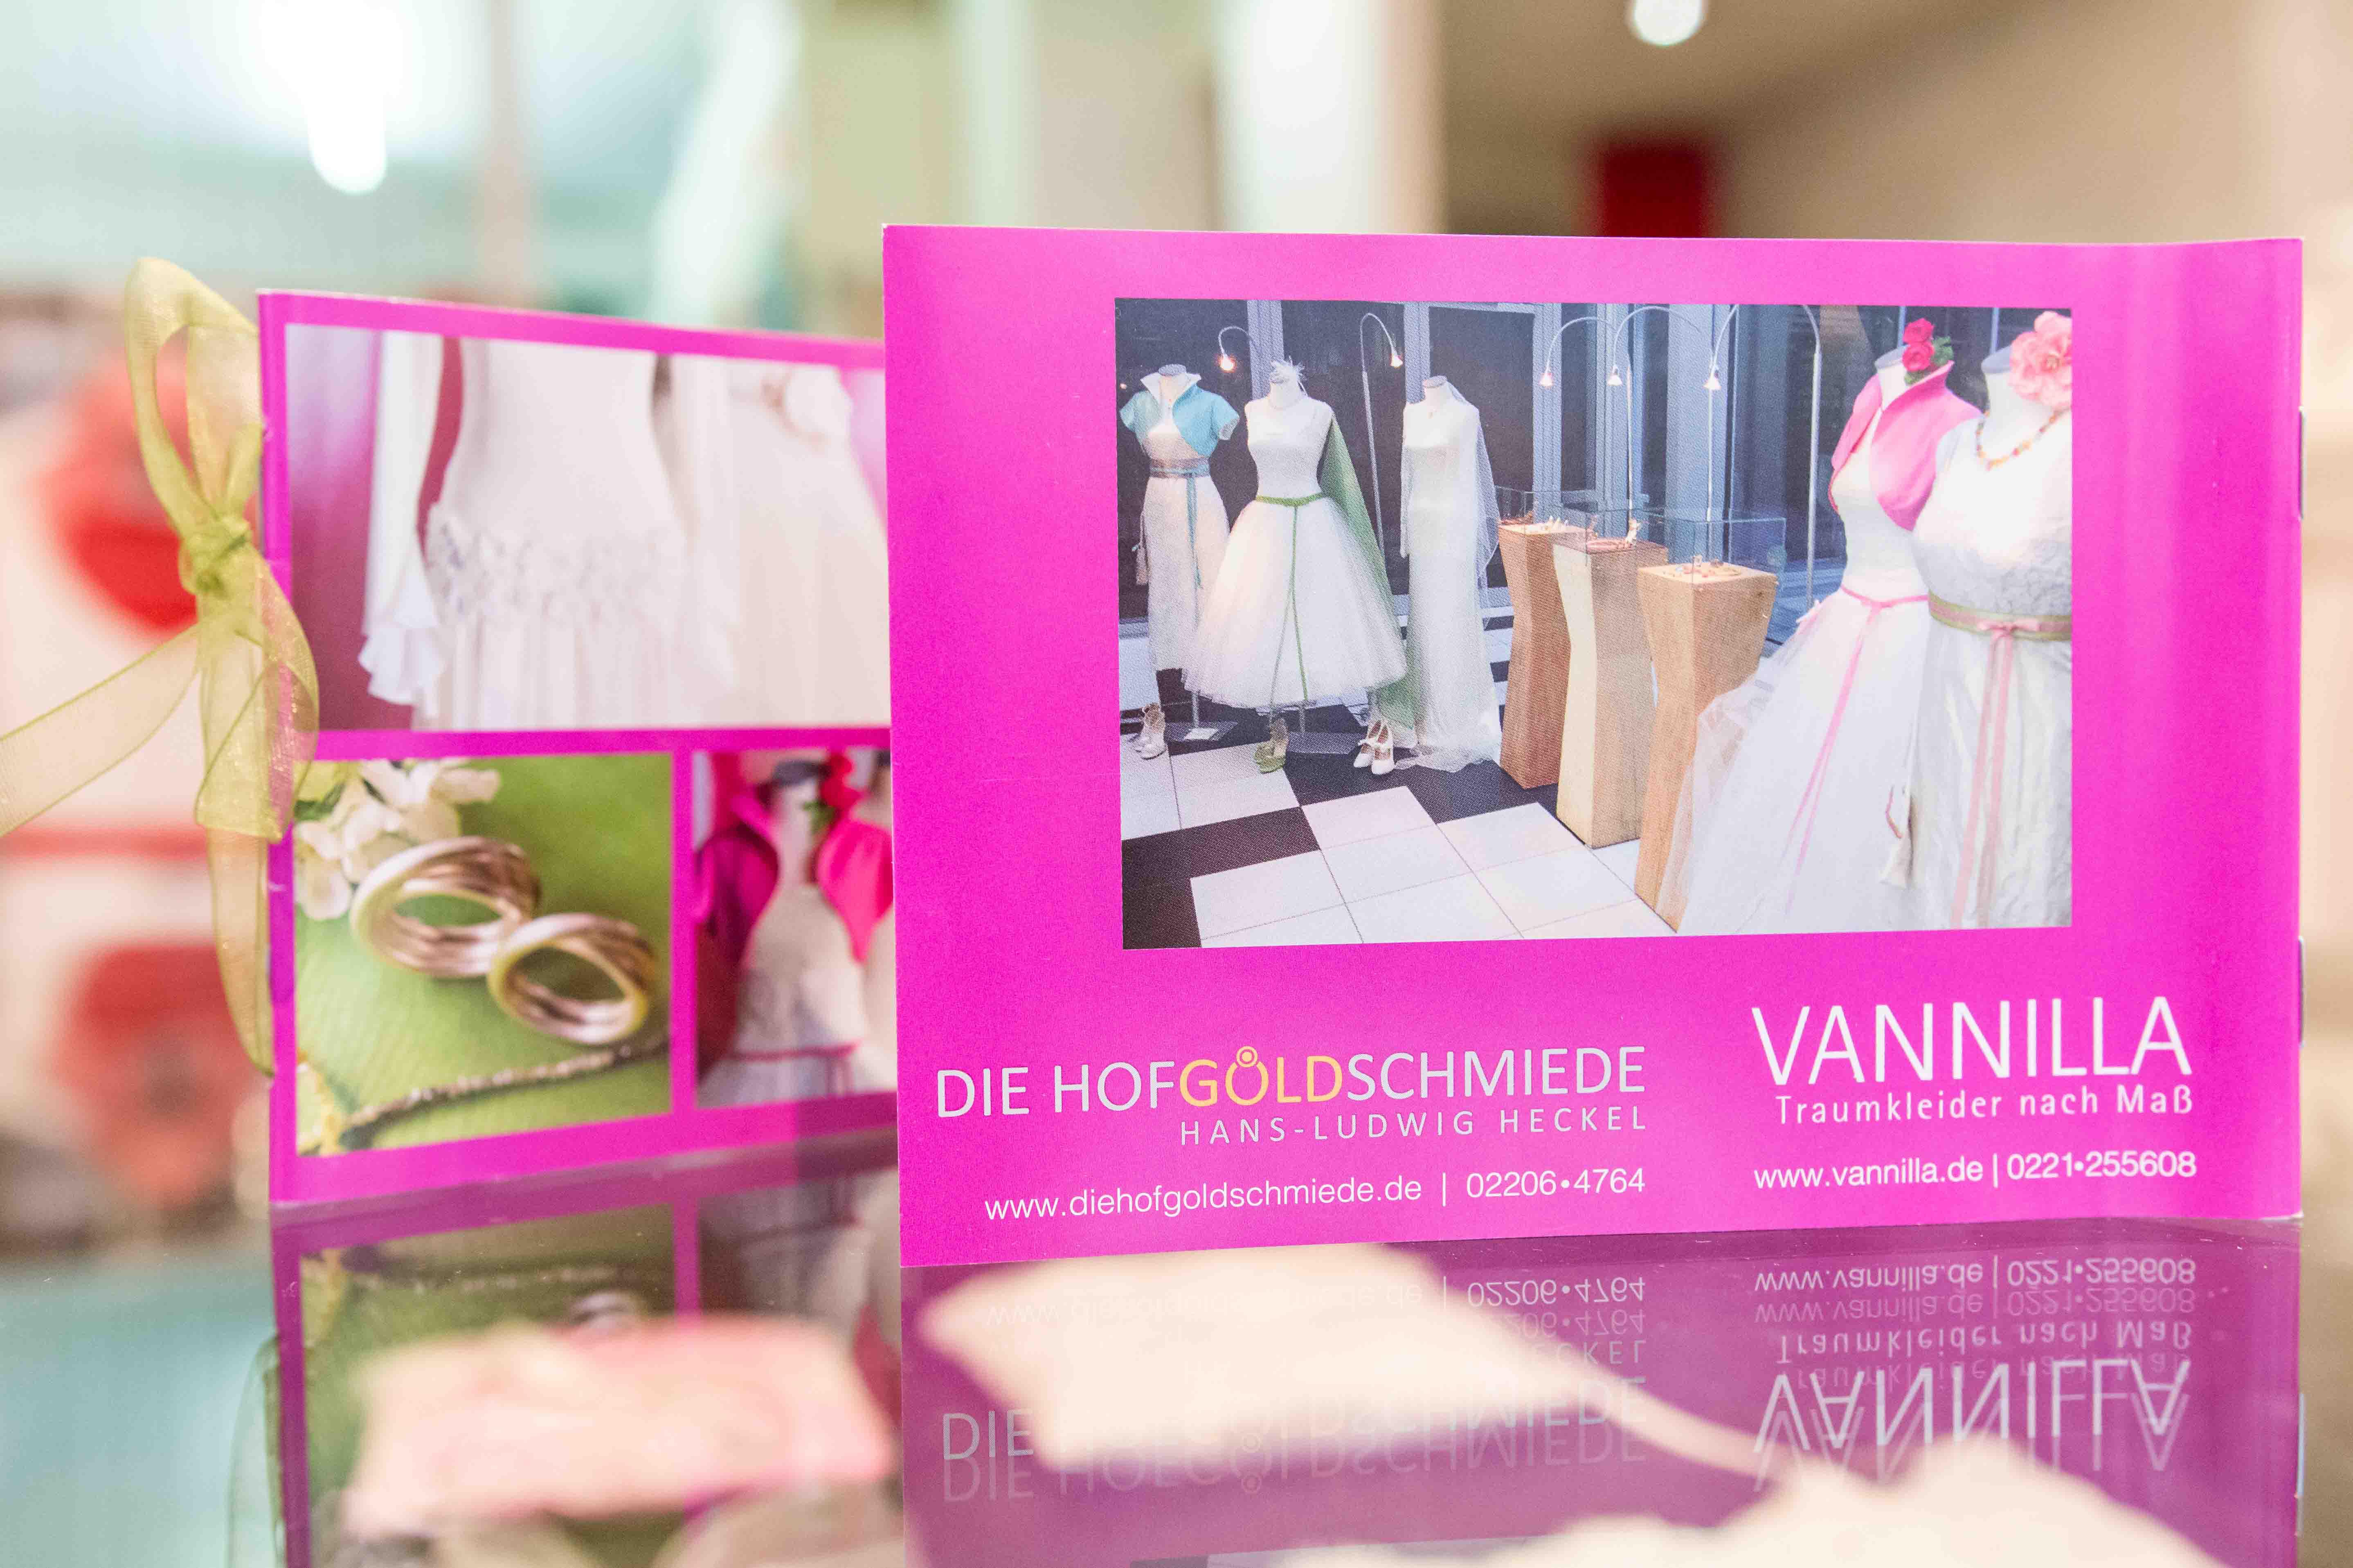 Vannilla - Brautkleider nach Maß